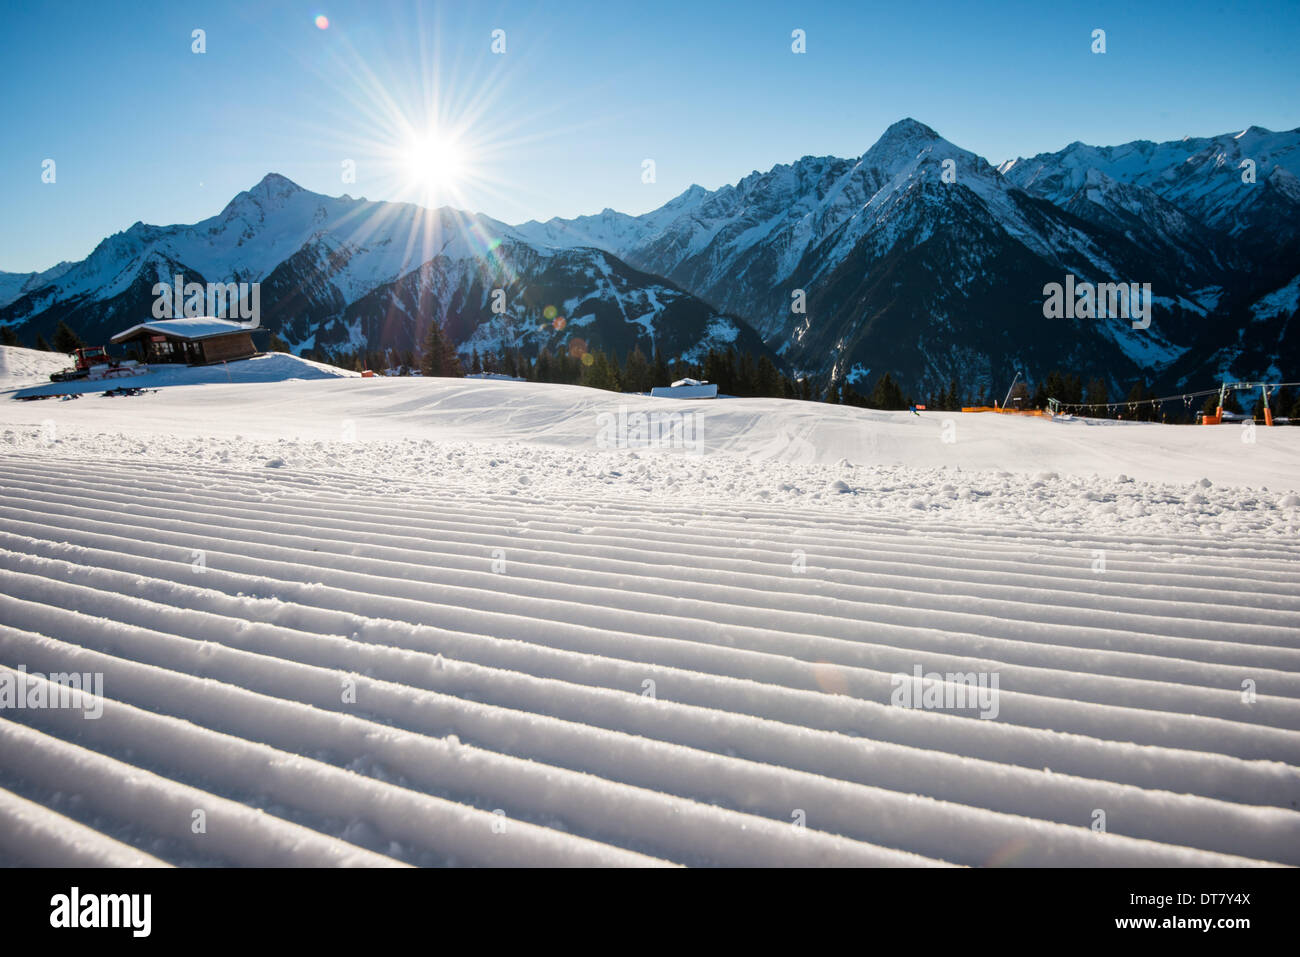 Il sole splende su un dolce pendio preparati su una montagna presso la stazione sciistica di Mayrhofen in Tirolo, Austria. - Dicembre 2013 Foto Stock